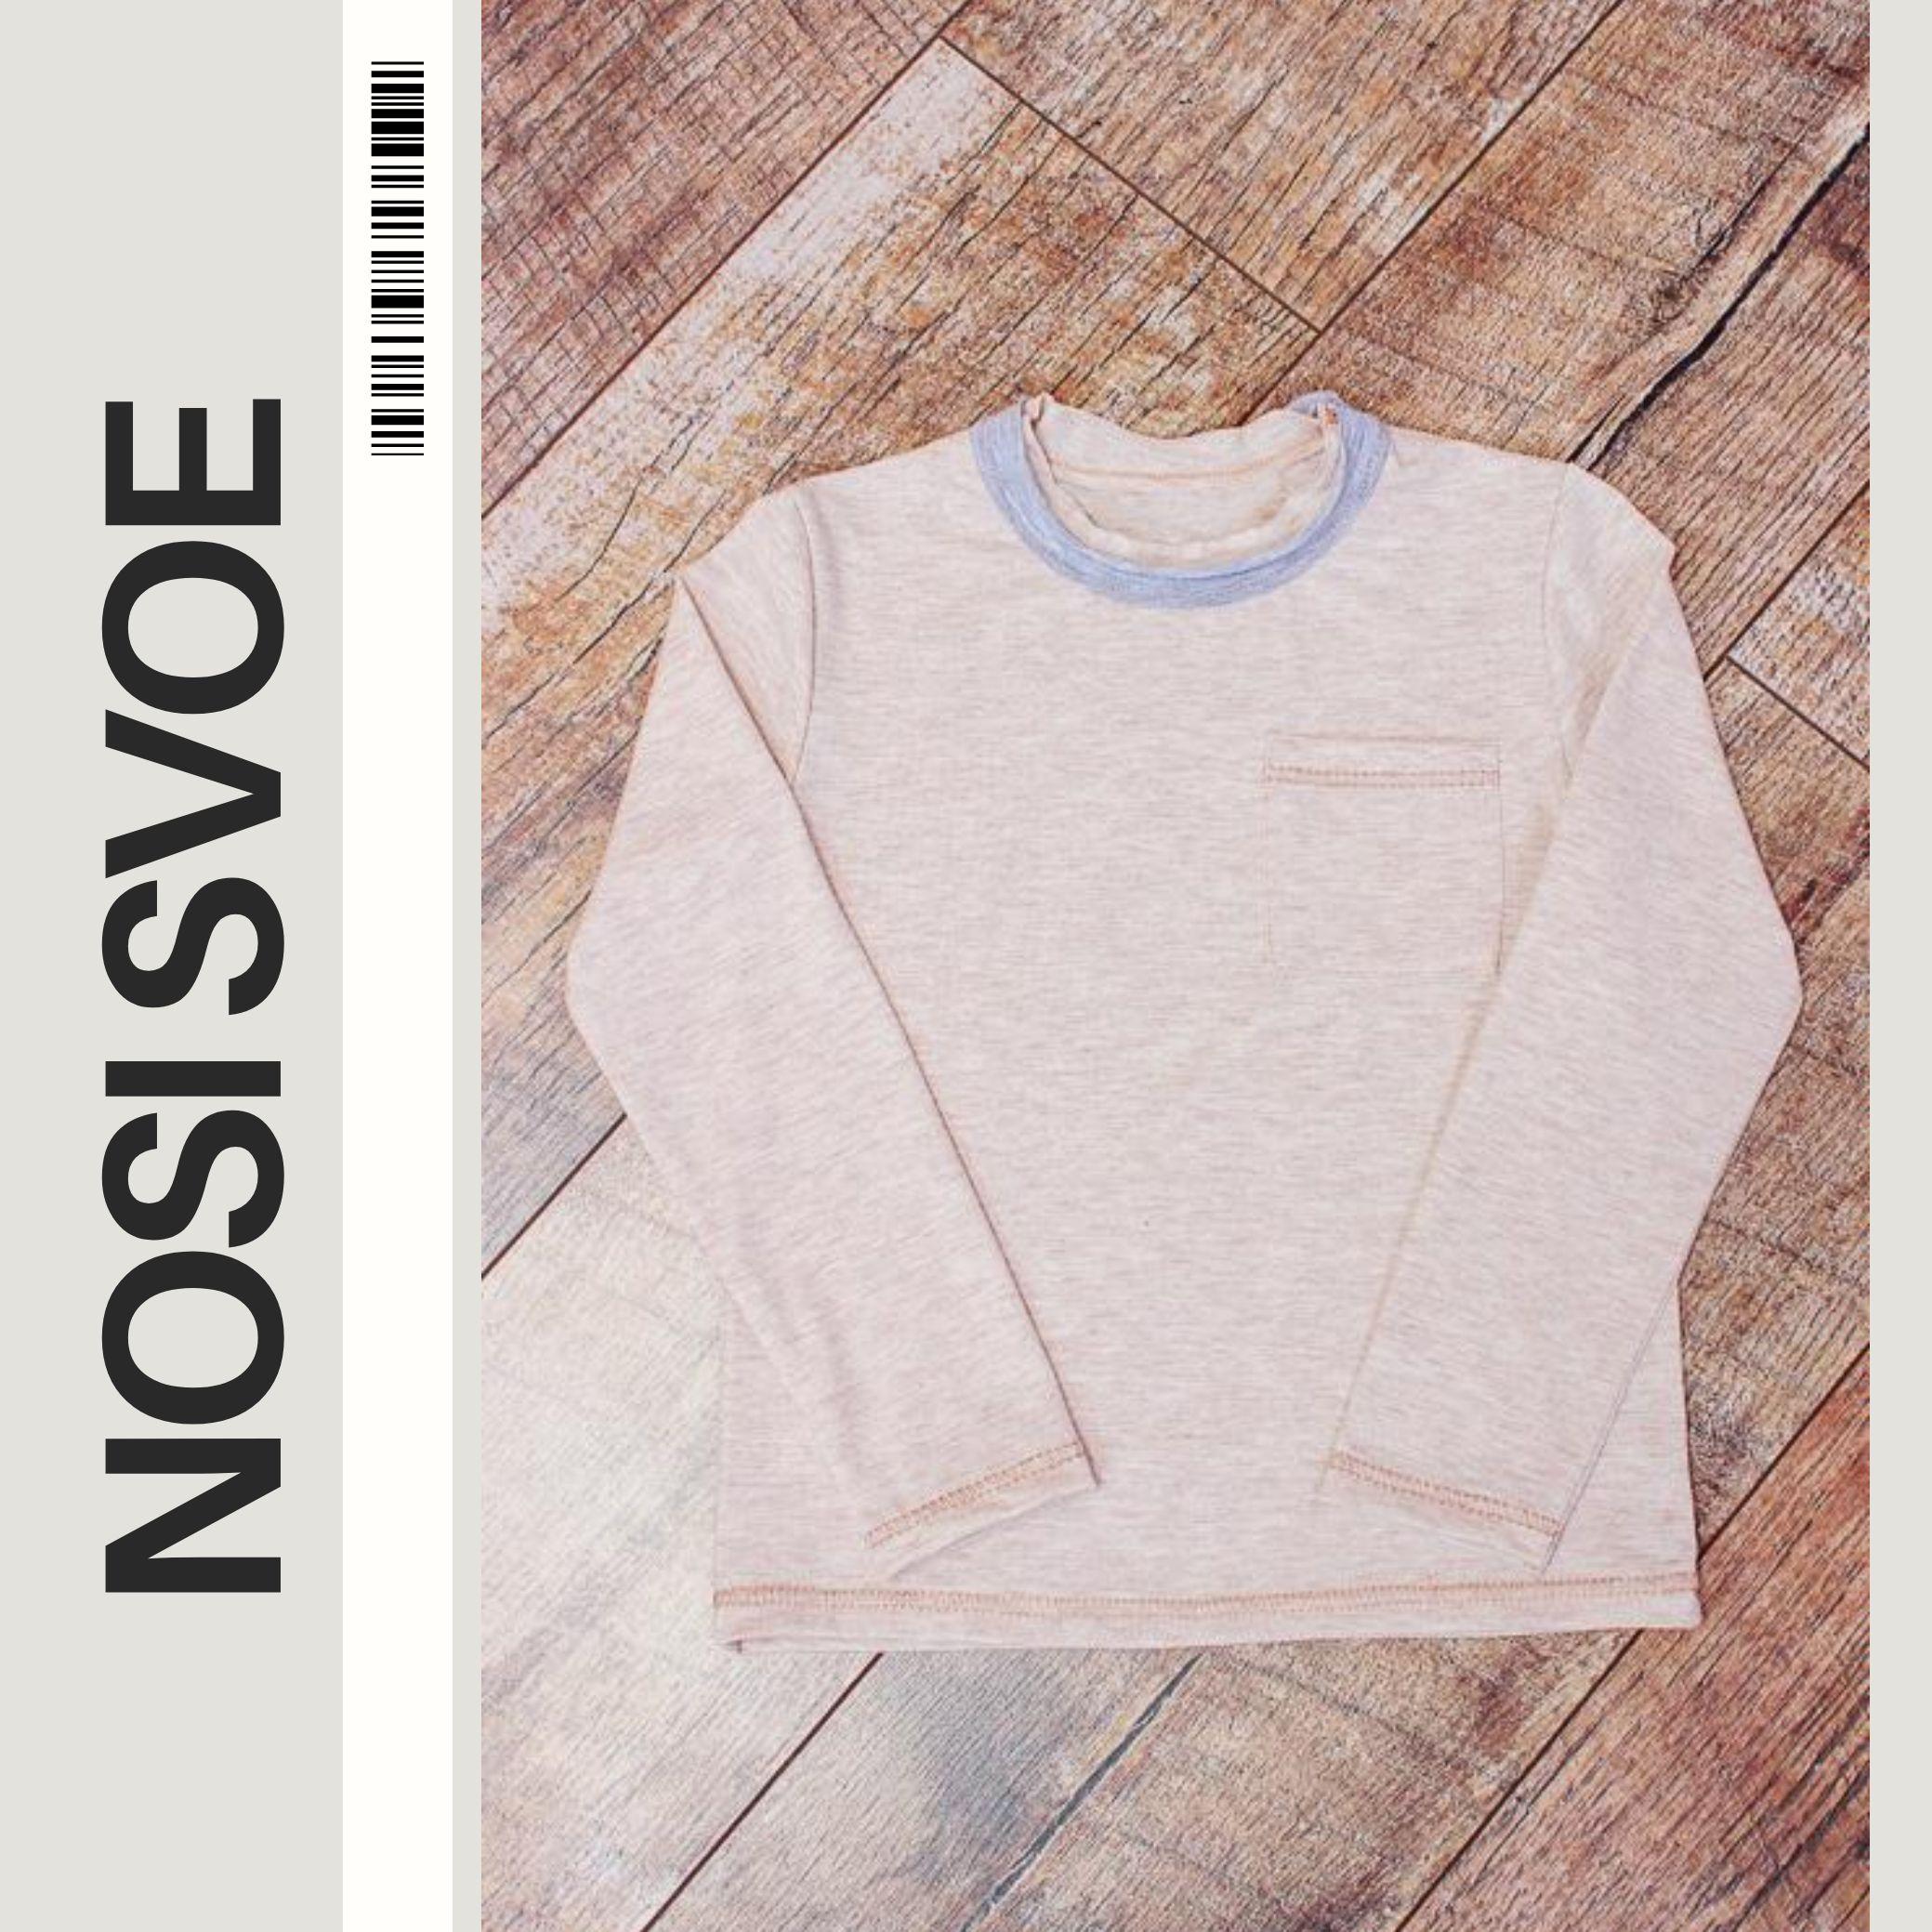 НС Sweatshirt (boys) , Any season , Nosi svoe 6221-090